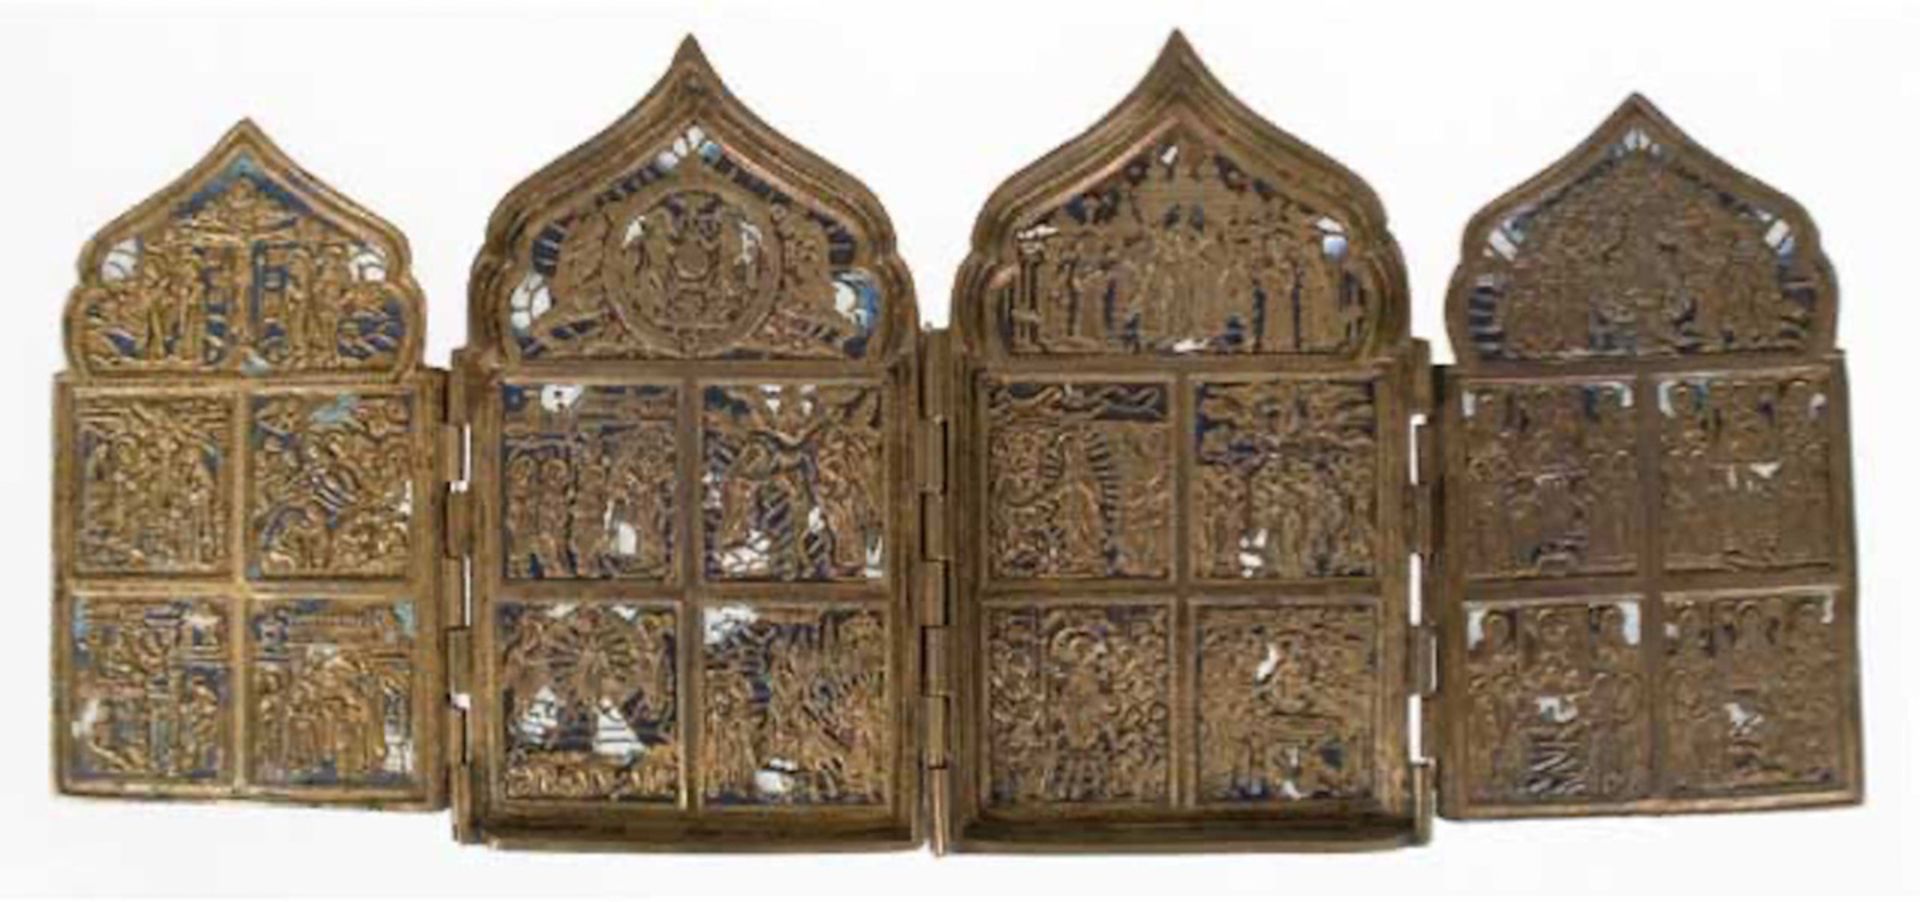 Reiseikone, 19. Jh., Messing, 4-flügelig, reiche reliefierte Heiligendarstellungen,partiell